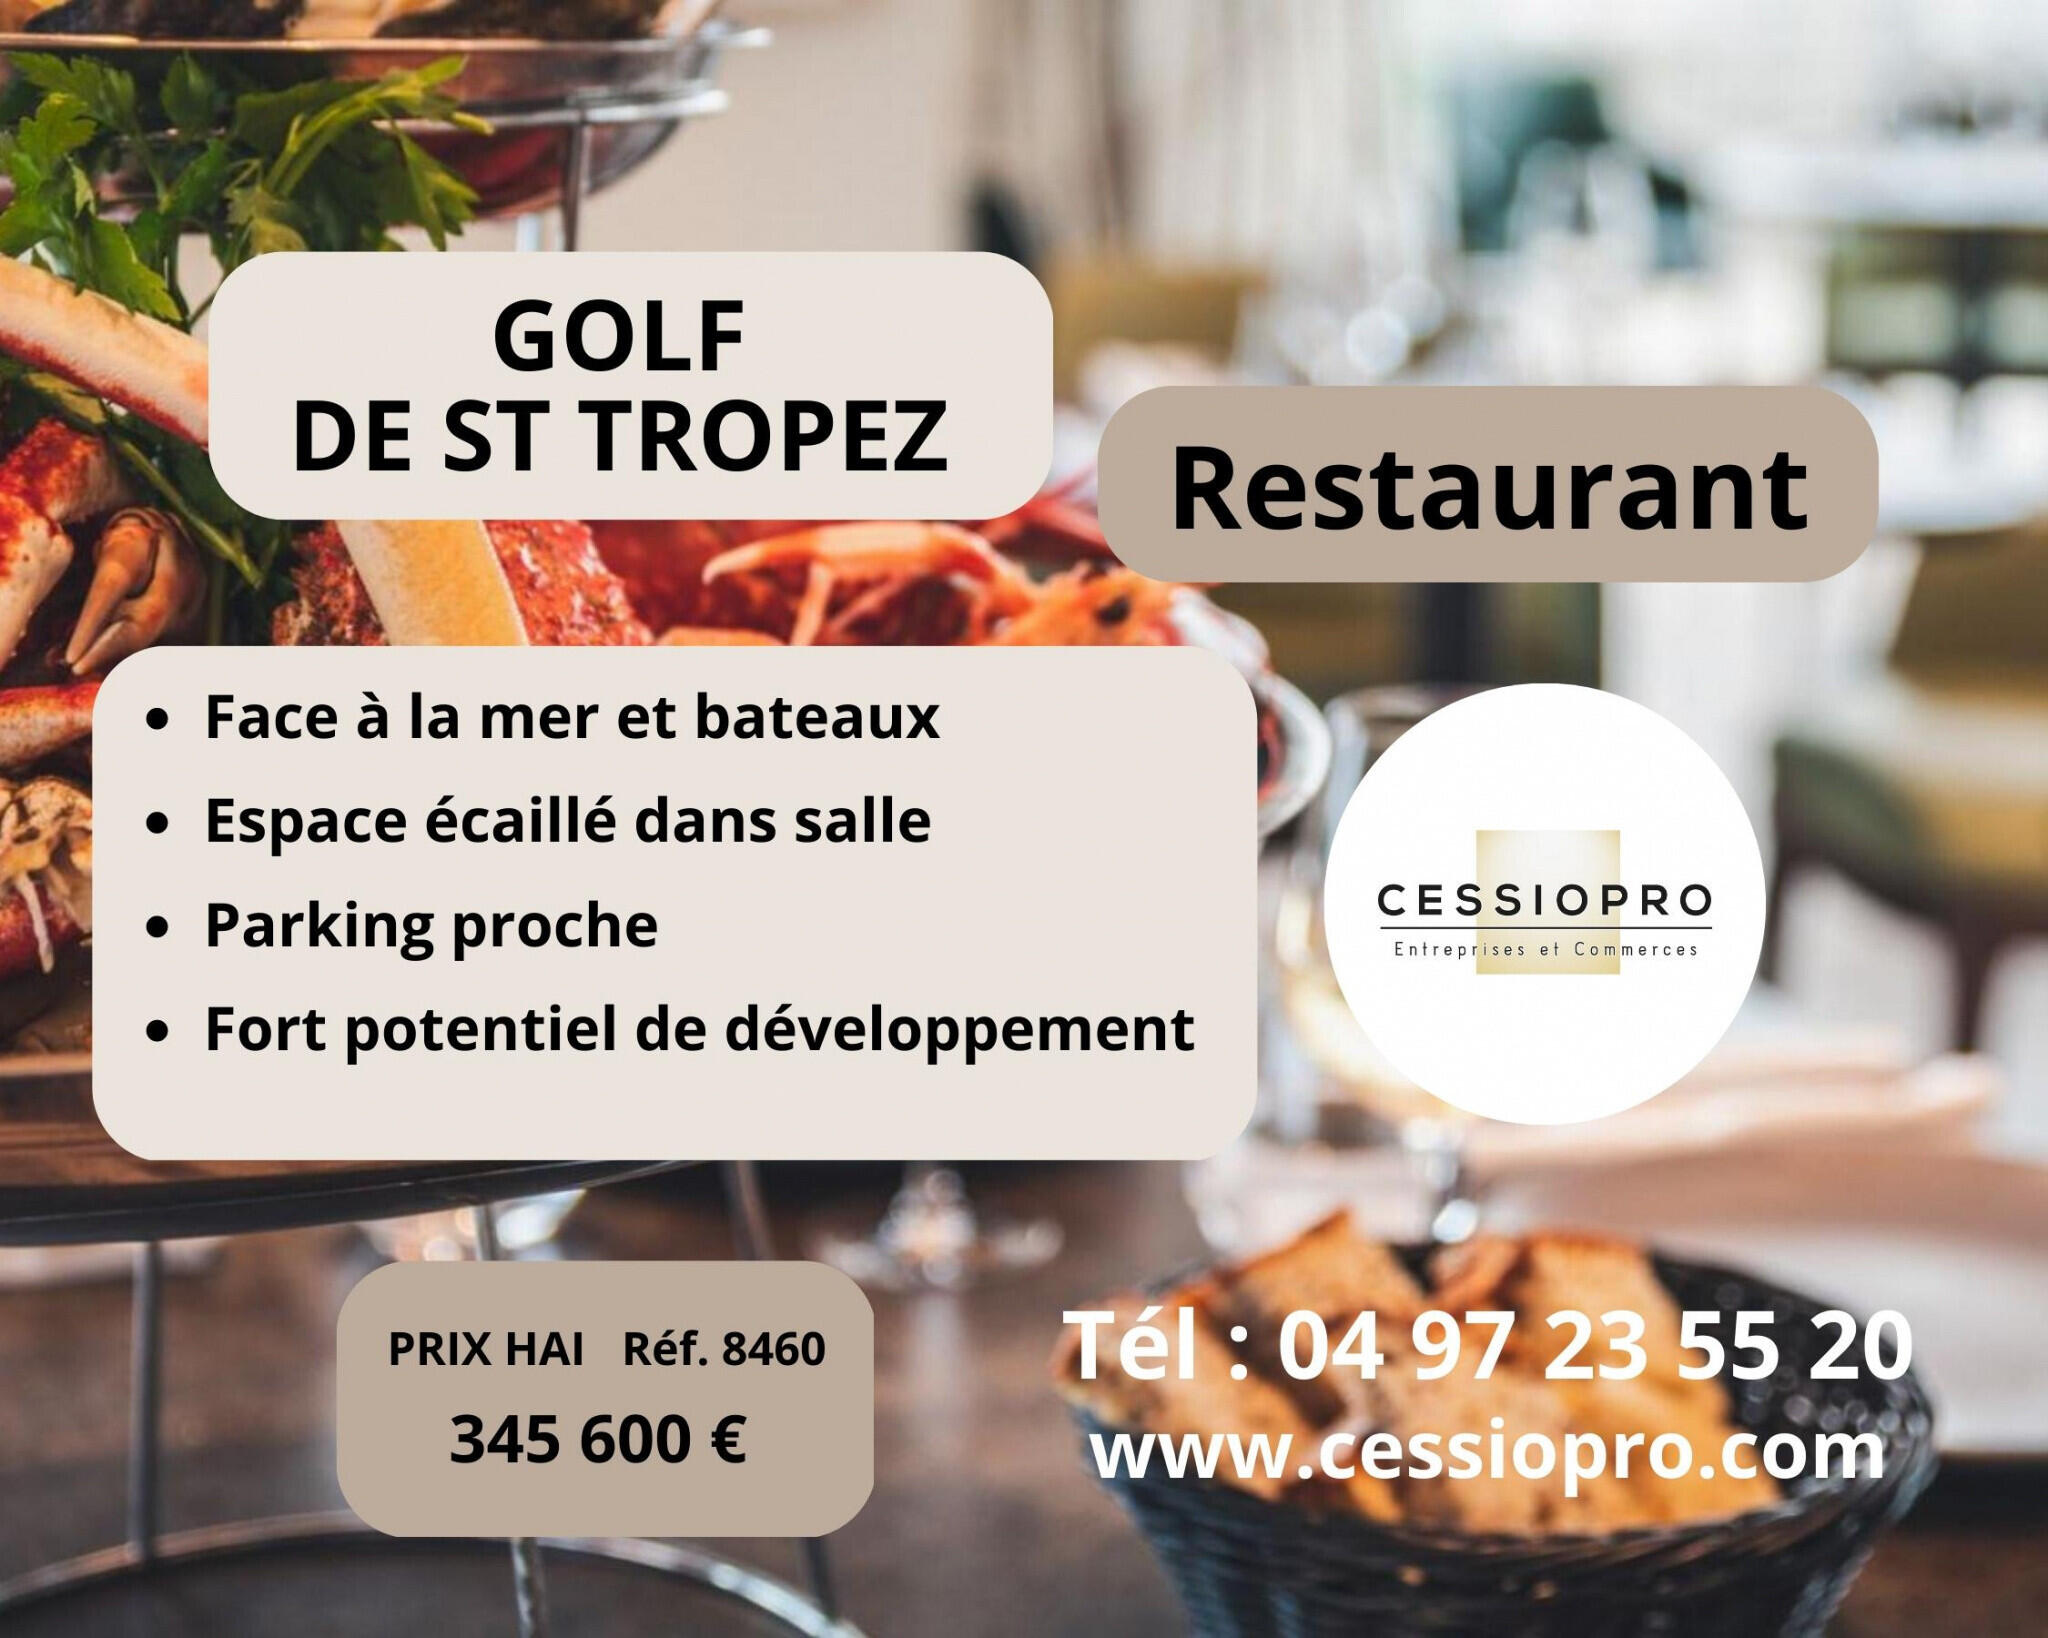 Vend très beau restaurant face mer à Sainte Maxime